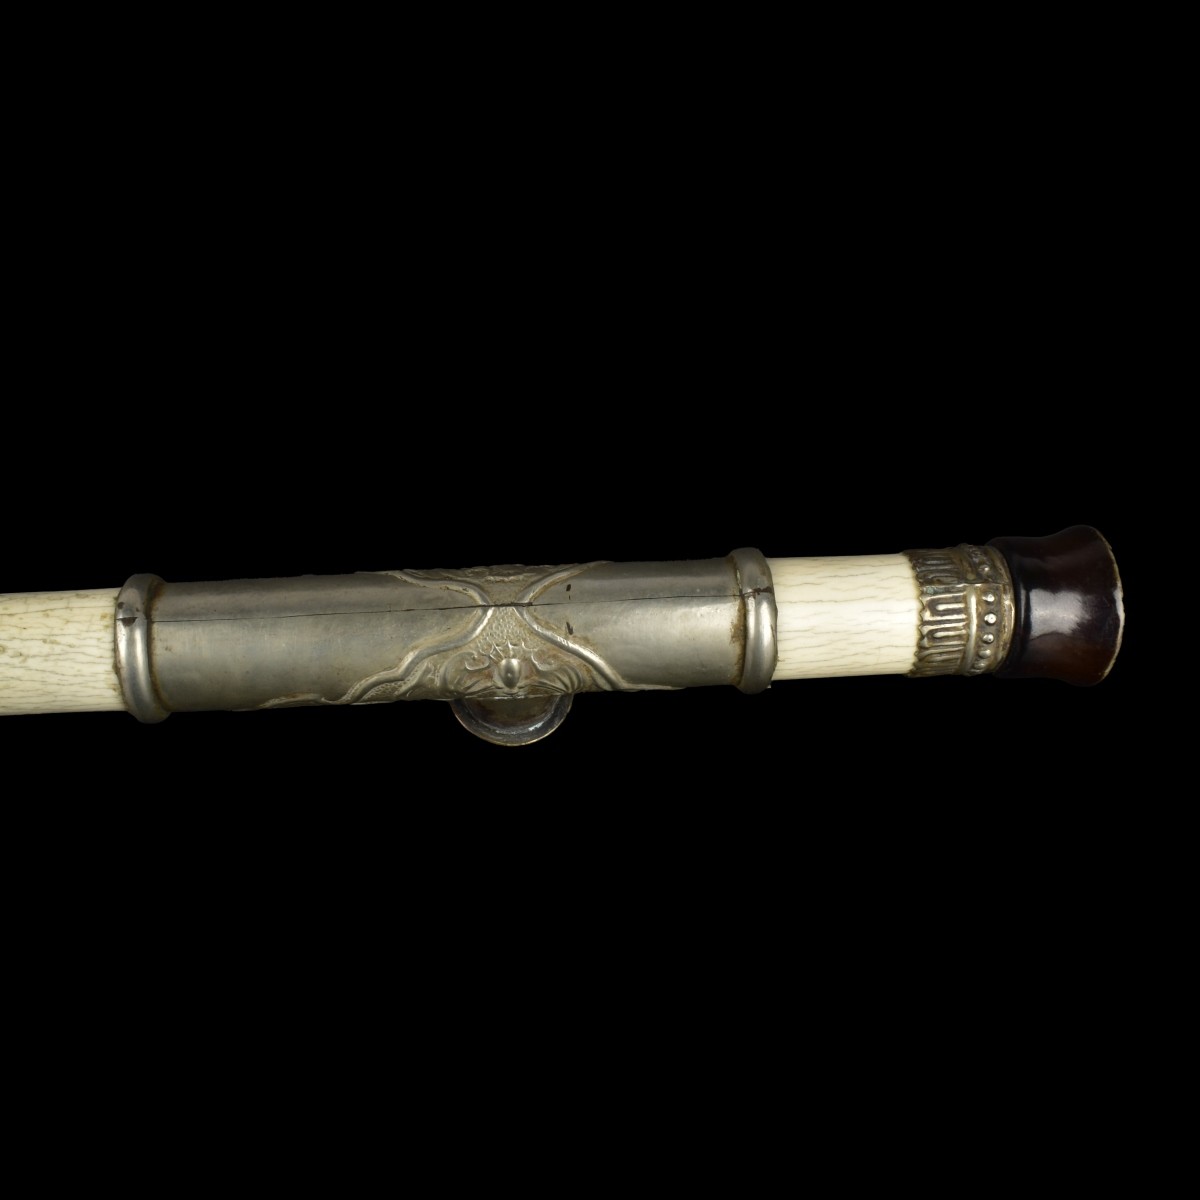 Antique Chinese Opium Pipe